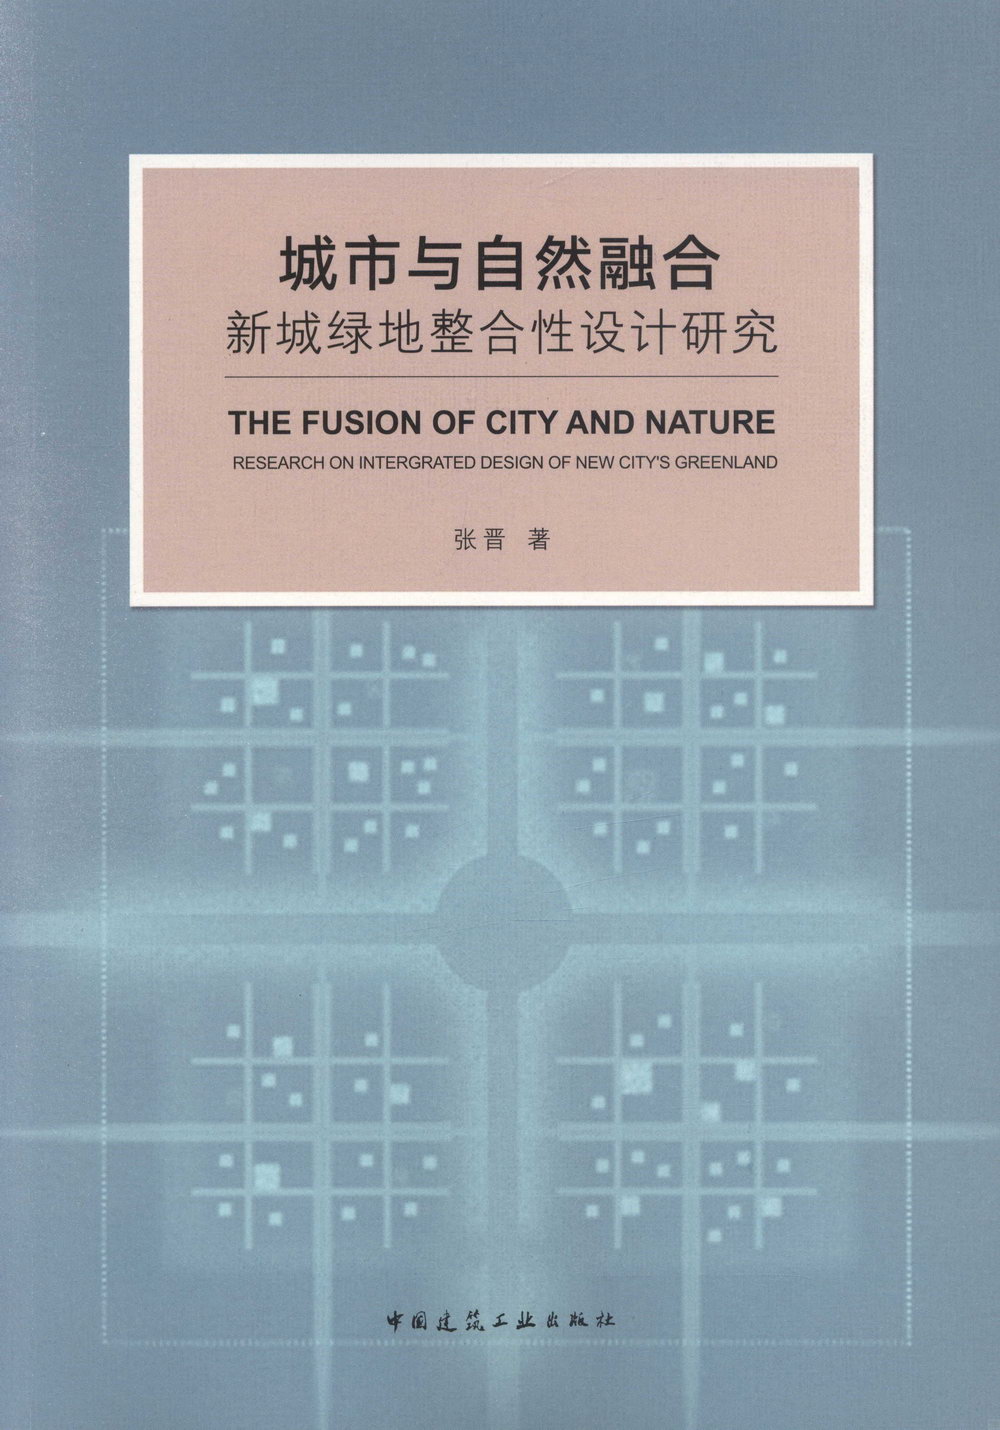 城市與自然融合：新城綠地整合性設計研究